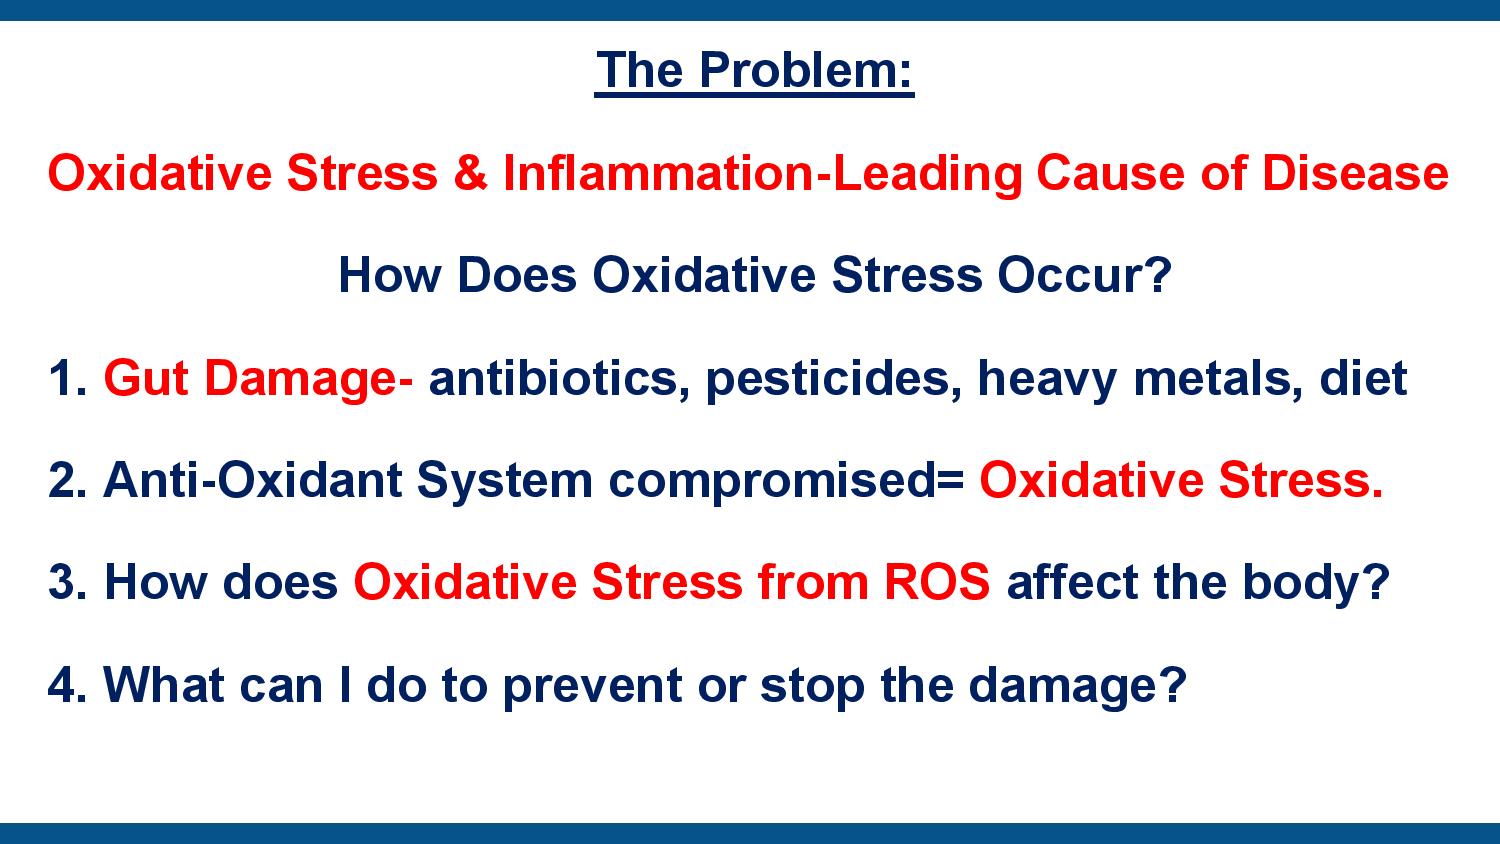 Oxidatative Stress page 2